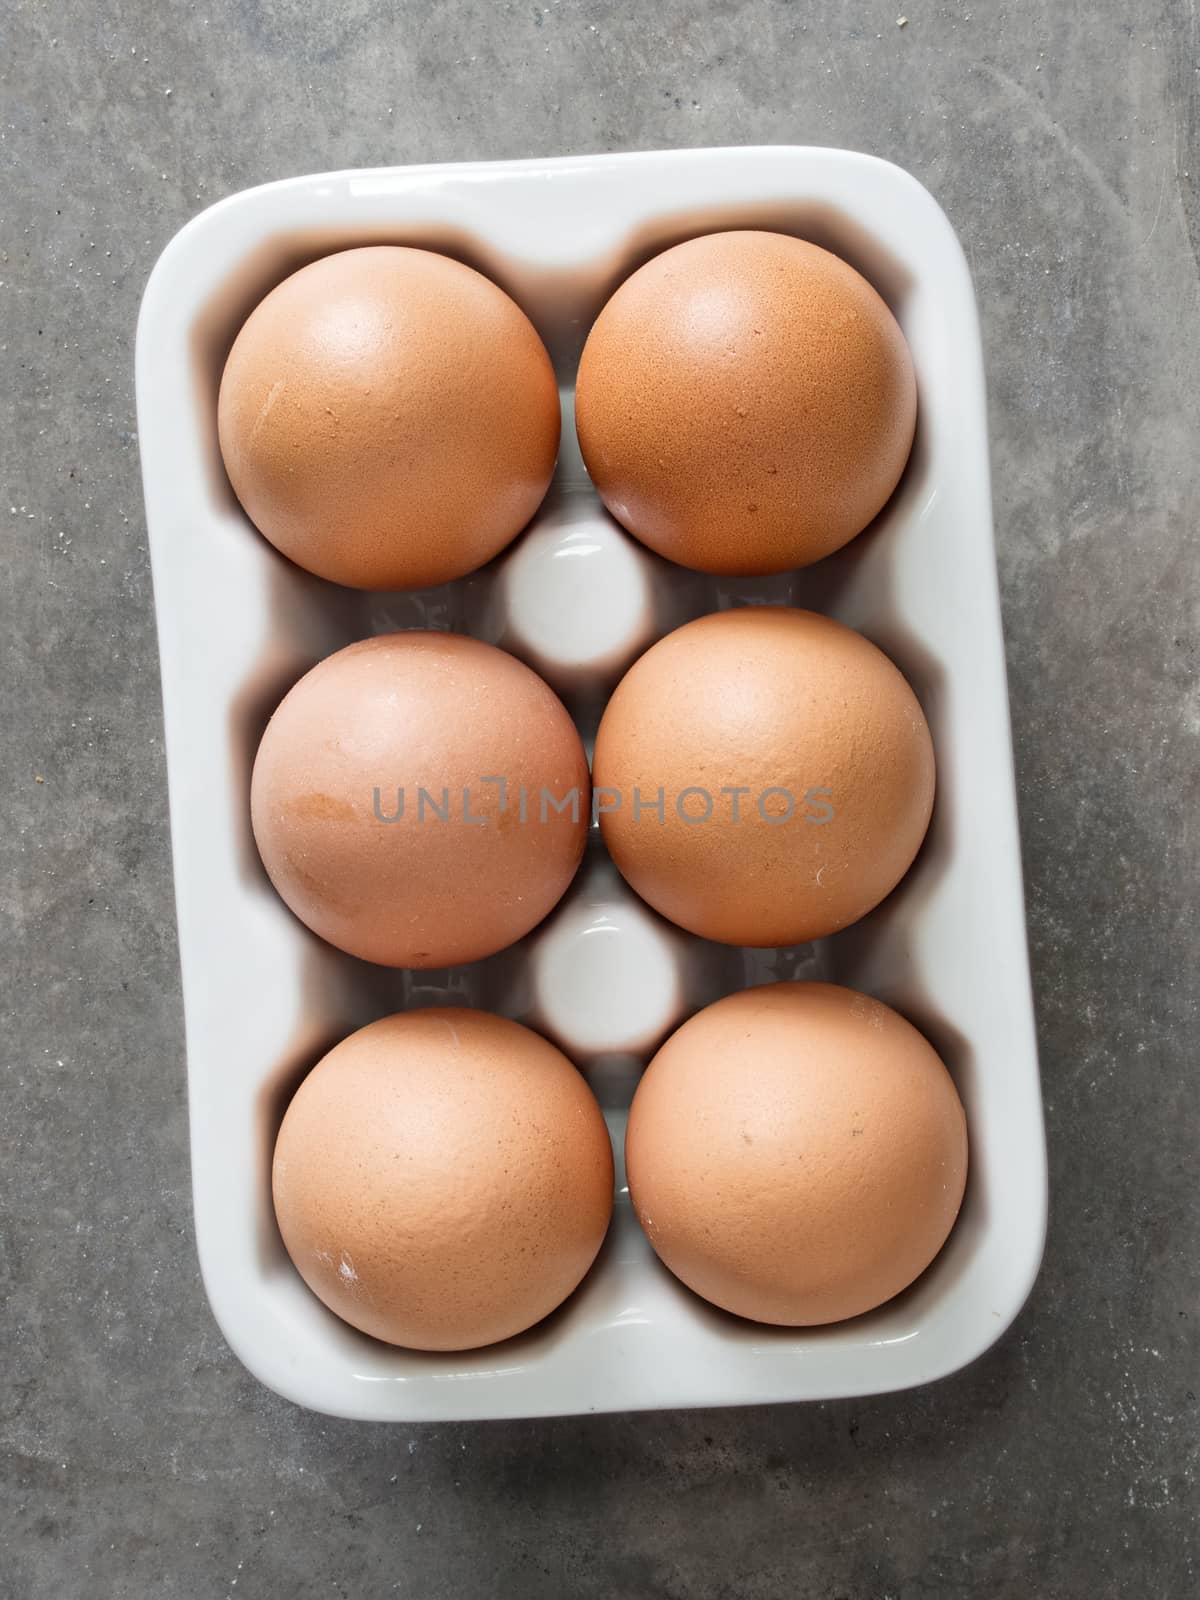 rustic chicken egg by zkruger